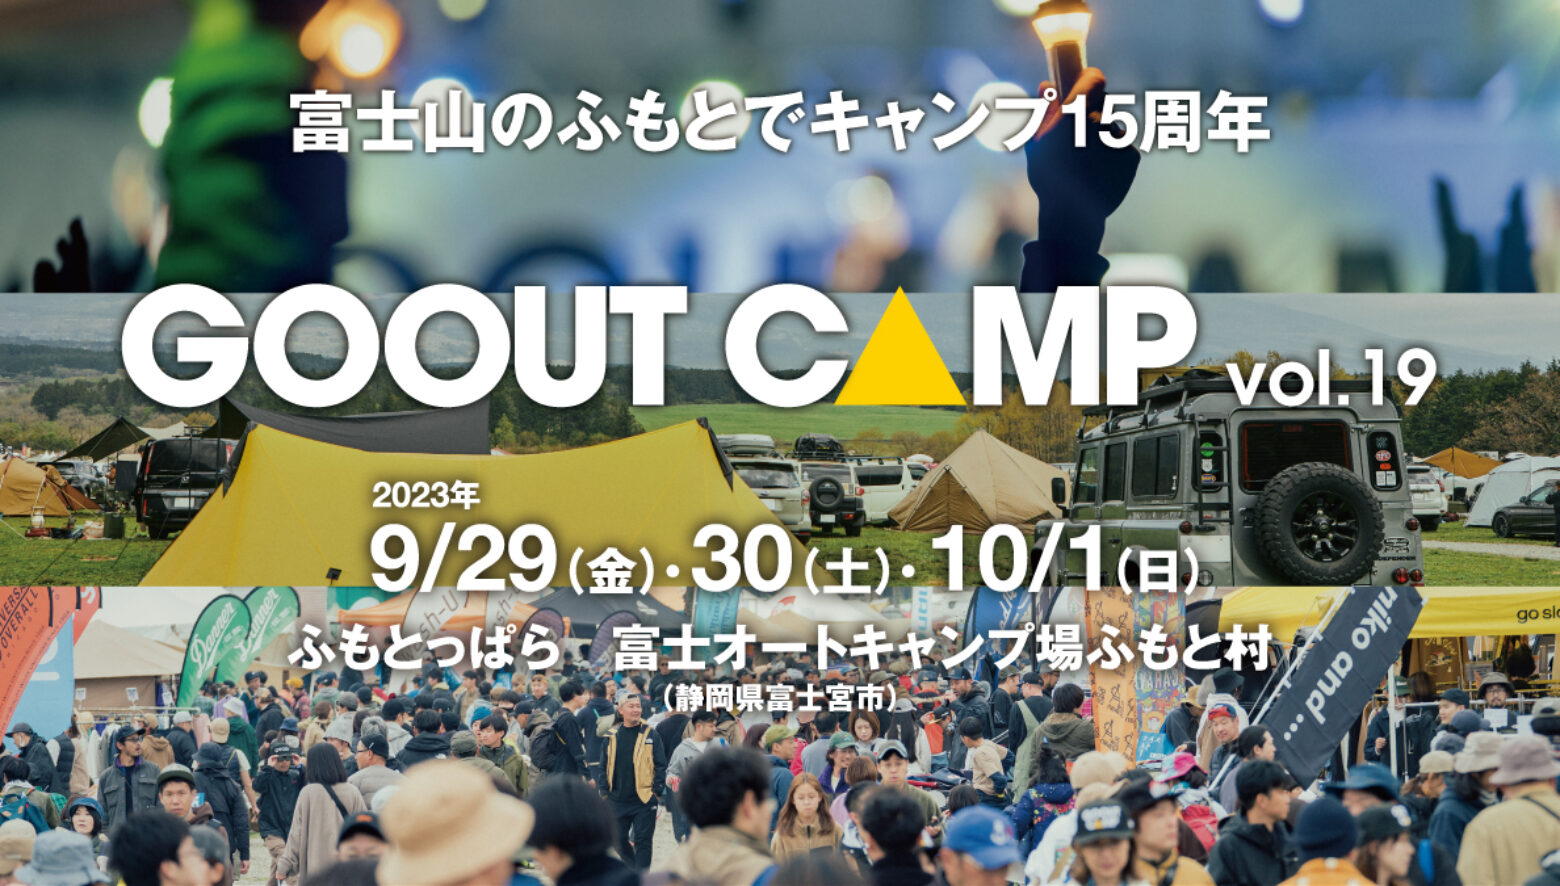 富士山のふもとで15周年!! 「GO OUT CAMP vol.19」が、9月に開催